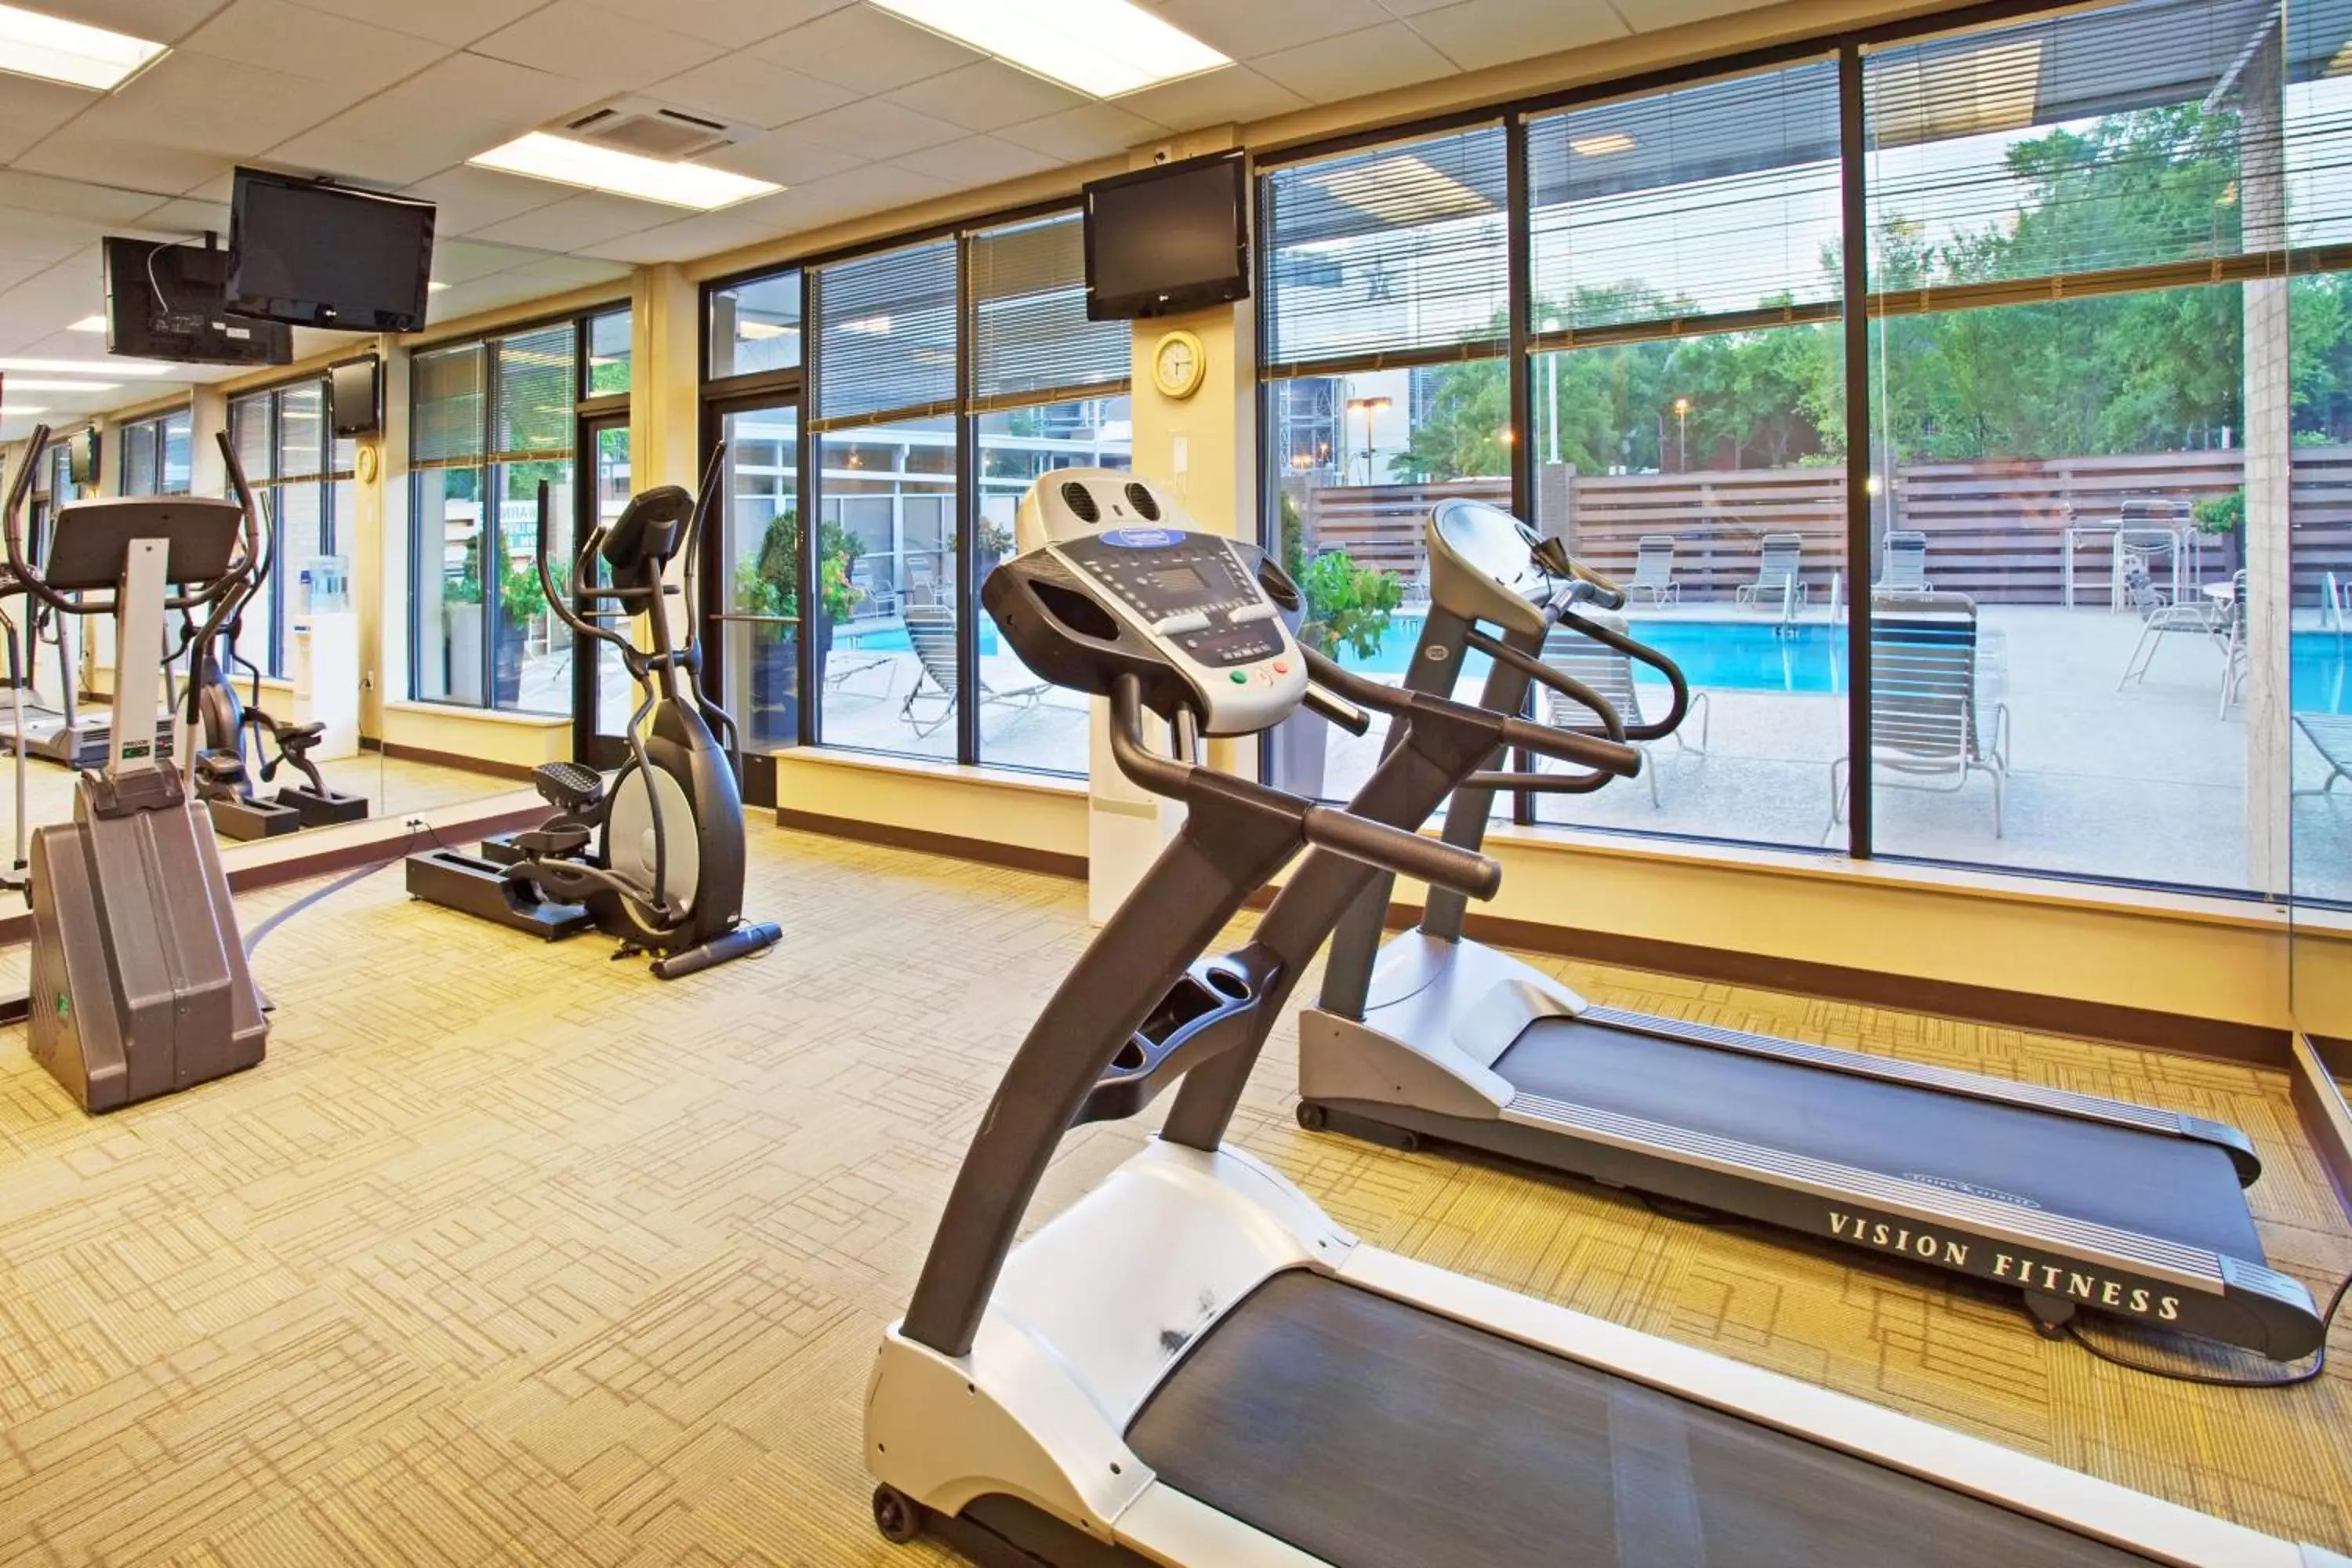 Fitness centre/facilities, Fitness Center/Facilities in Holiday Inn Nashville Vanderbilt, an IHG Hotel